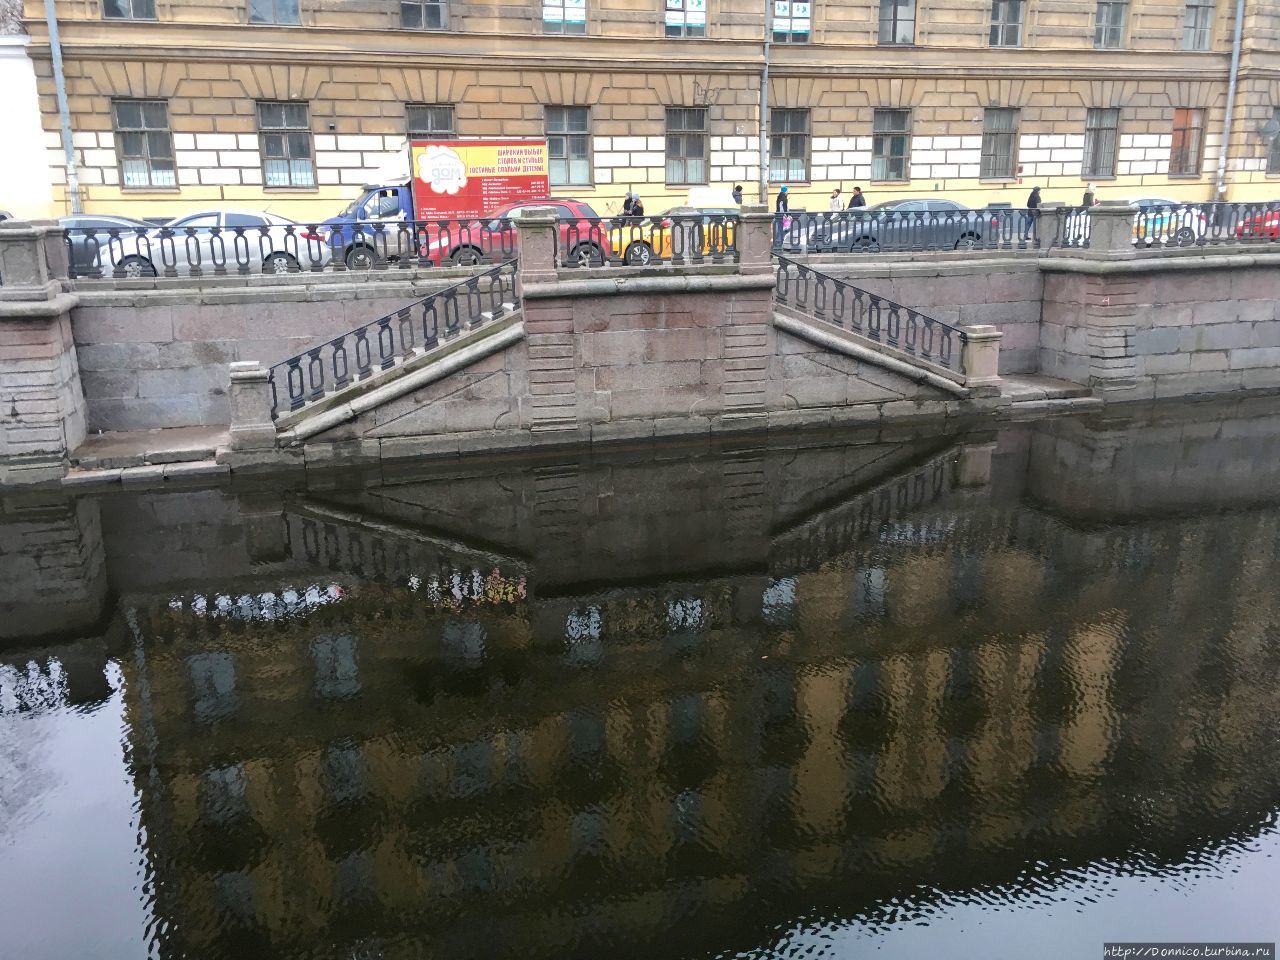 отражения в канале Грибоедова Санкт-Петербург, Россия